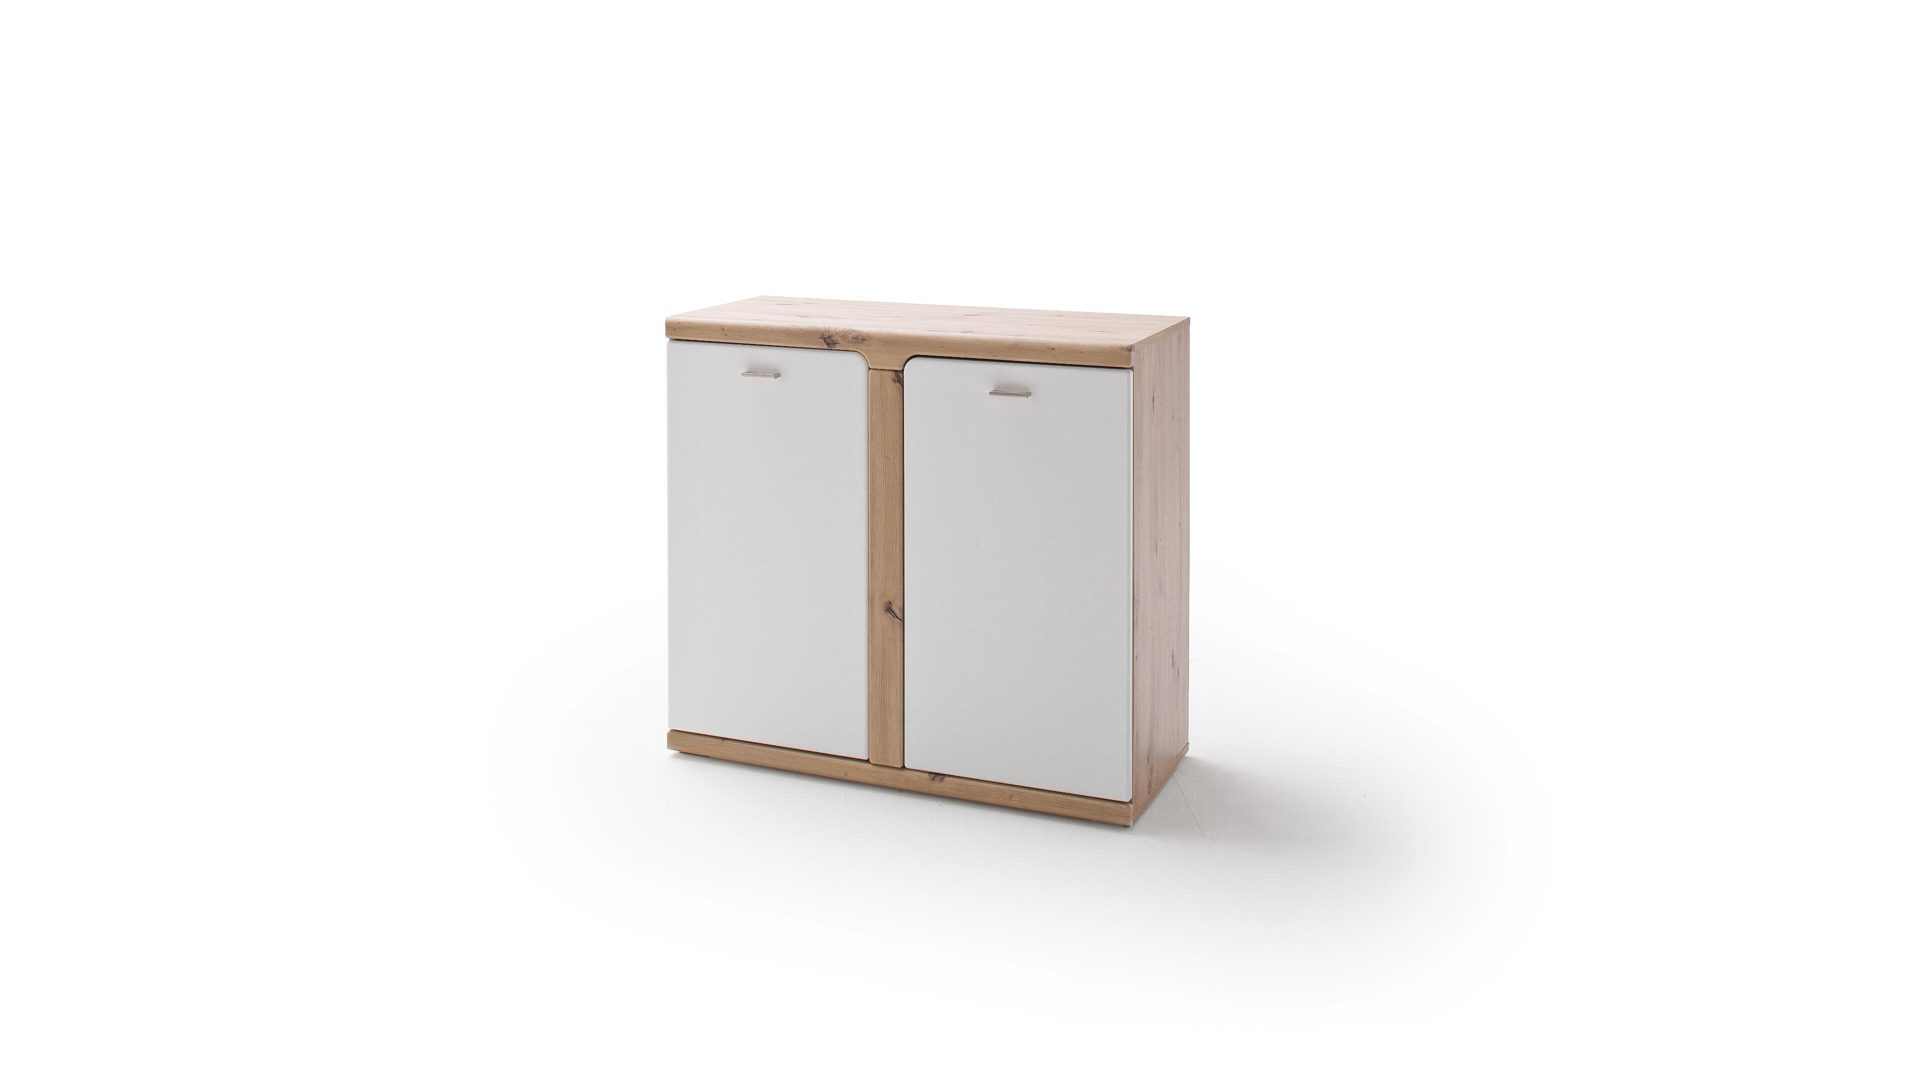 Türenkommode Mca furniture aus Holz in Weiß Garderoben-Türenkommode weiße & balkeneichefarbene Kunststoffoberflächen – zwei Türen